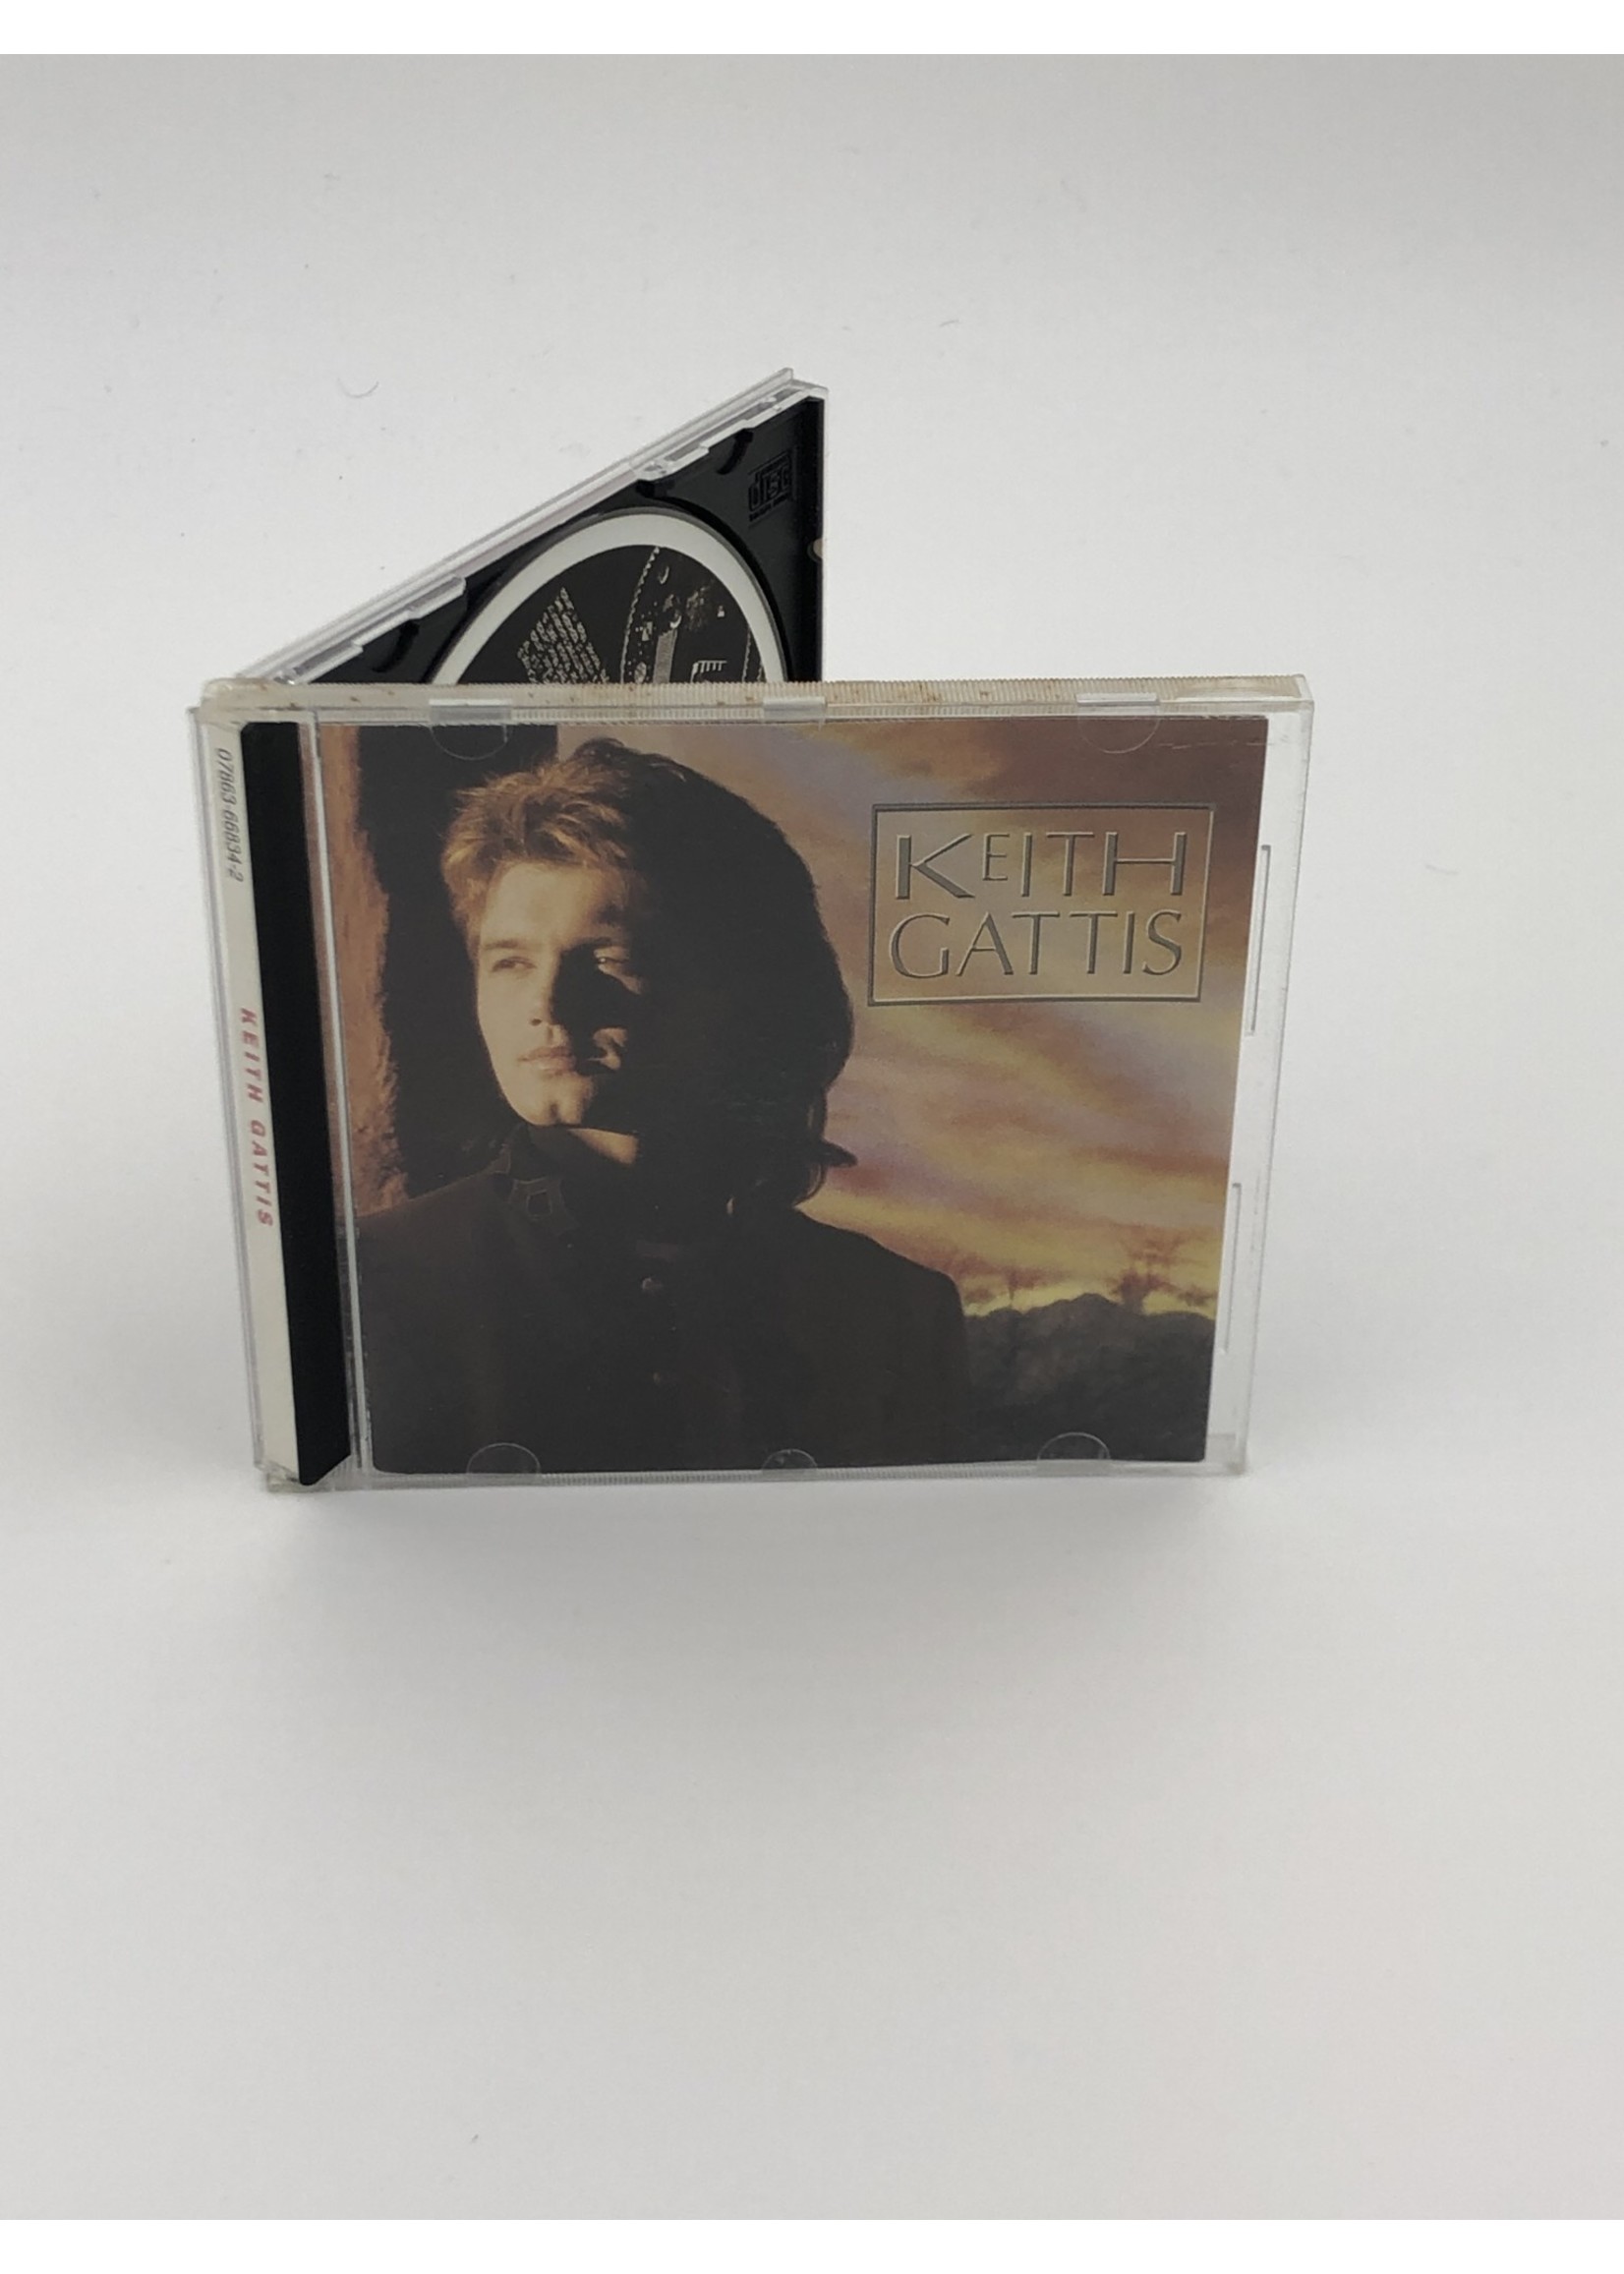 CD Keith Gattis: Keith Gattis CD